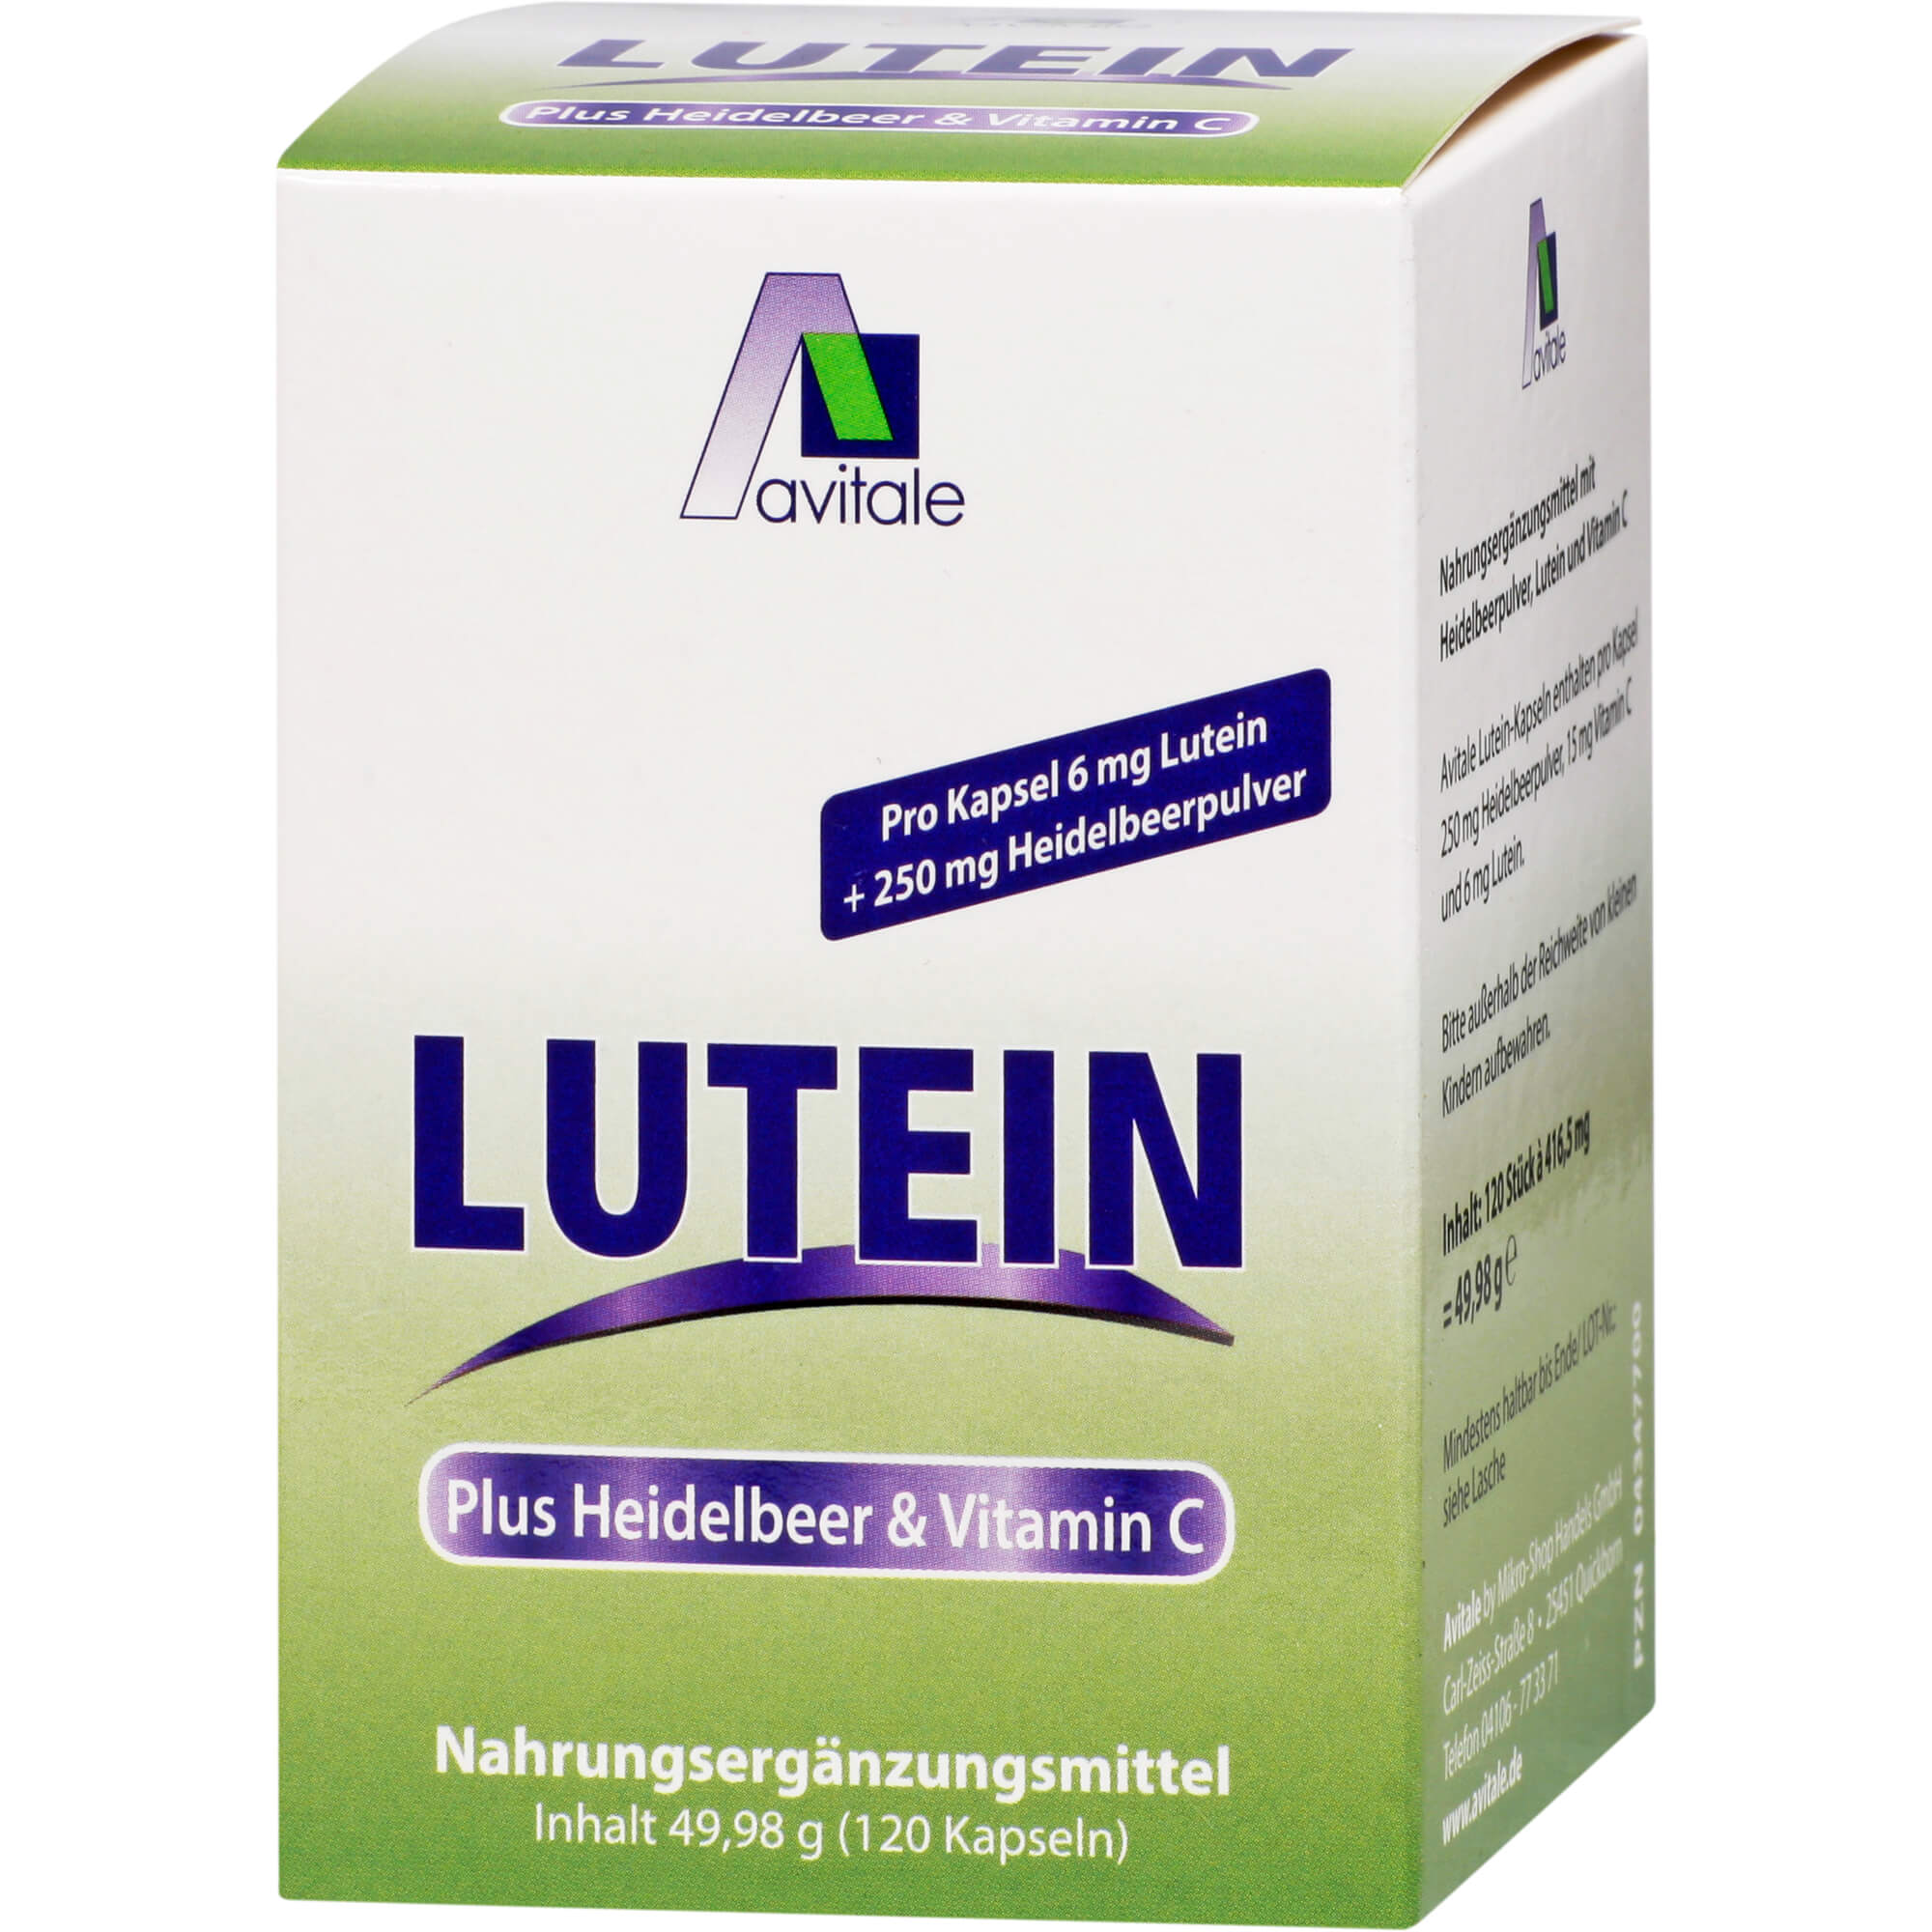 Lutein Kapseln 6 mg plus Heidelbeer.